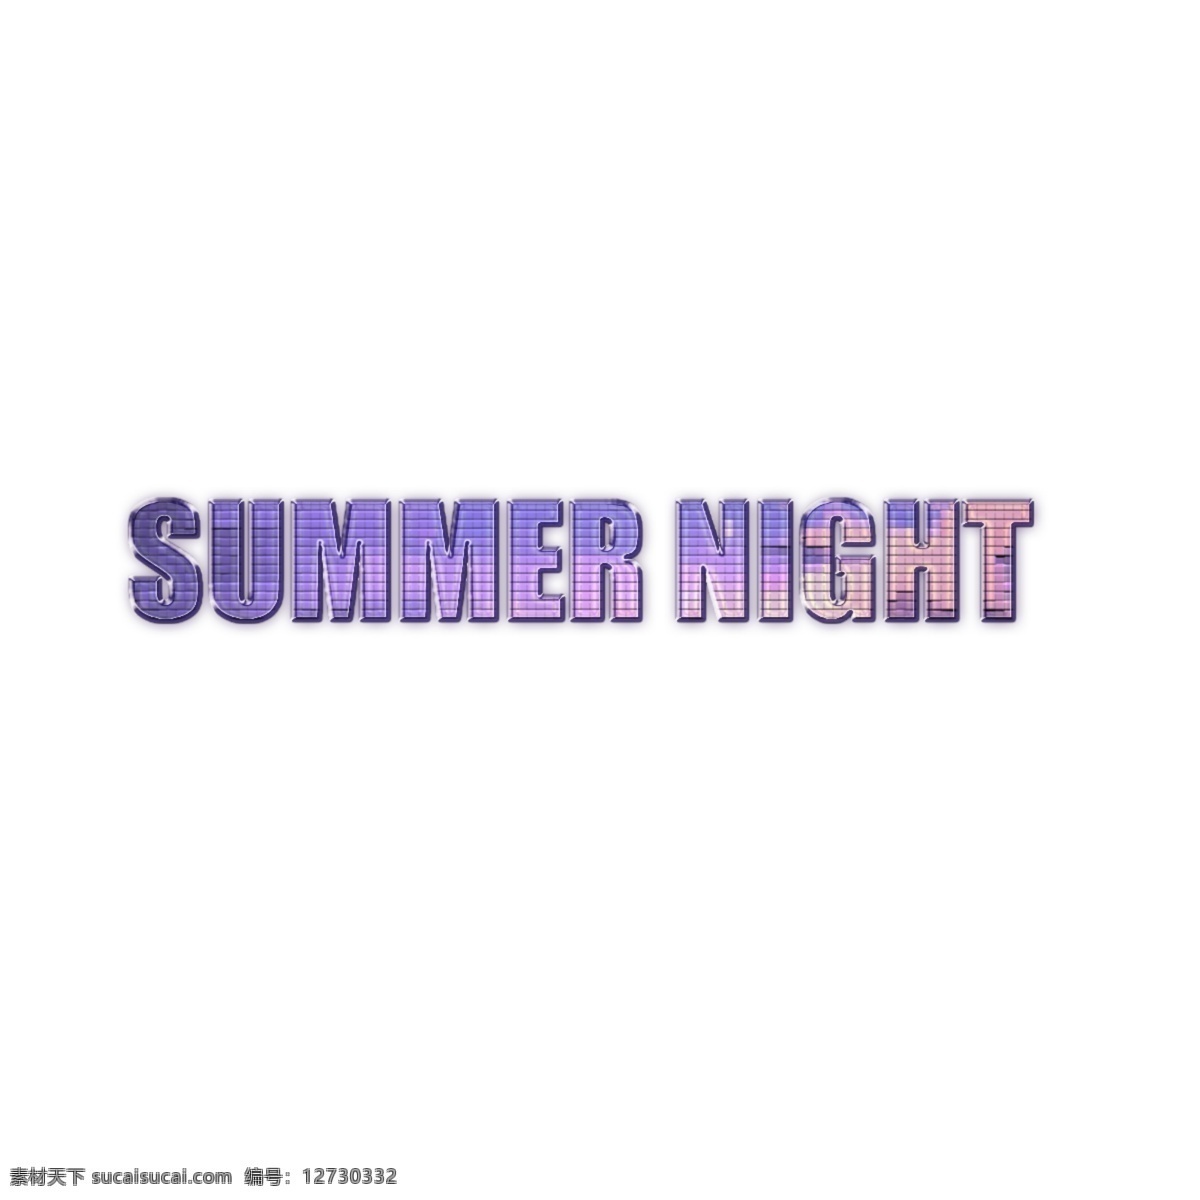 创意 水晶 夏夜 字体 夏天的夜晚 晚 夏季 creativ 夏天的字体 现代字体 字体设计 书法